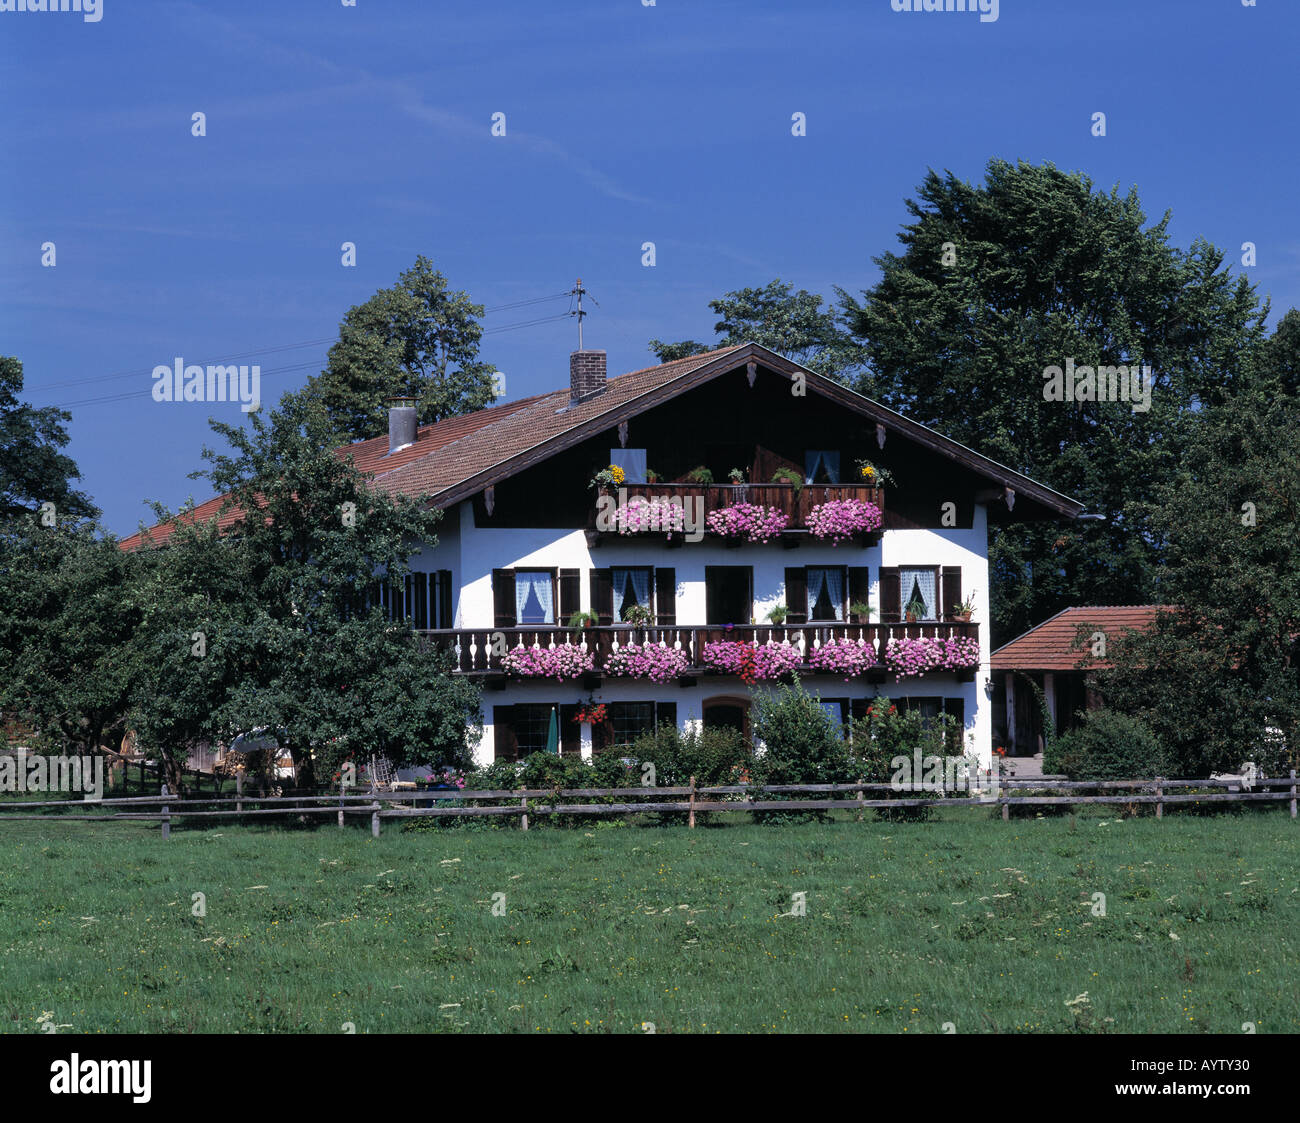 Einfamilienhaus, Balkone mit Geranien, Miesbach, Alpenvorland, Oberbayern Stock Photo